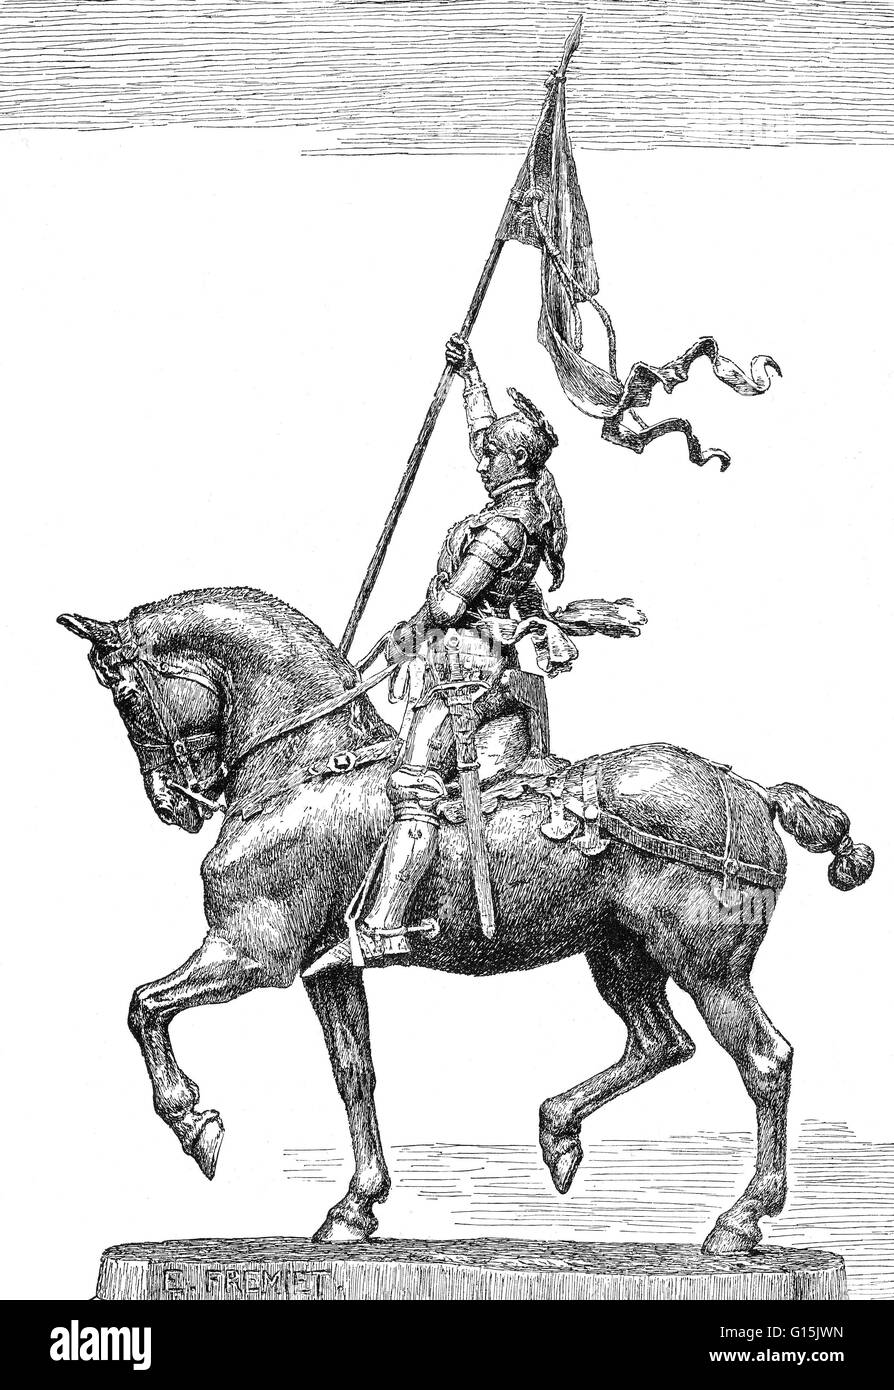 Joan of Arc rittlings auf einem Pferd, die Erhöhung der Schlacht. Unbekannter Künstler. Joan of Arc (6 Januar 1412-30 Mai 1431) Nationalheldin Frankreichs und eines katholischen Heiligen. Ein Bauernmädchen in Ostfrankreich geboren, die göttlichen Führung behauptet, führte sie die französische Armee zu s Stockfoto